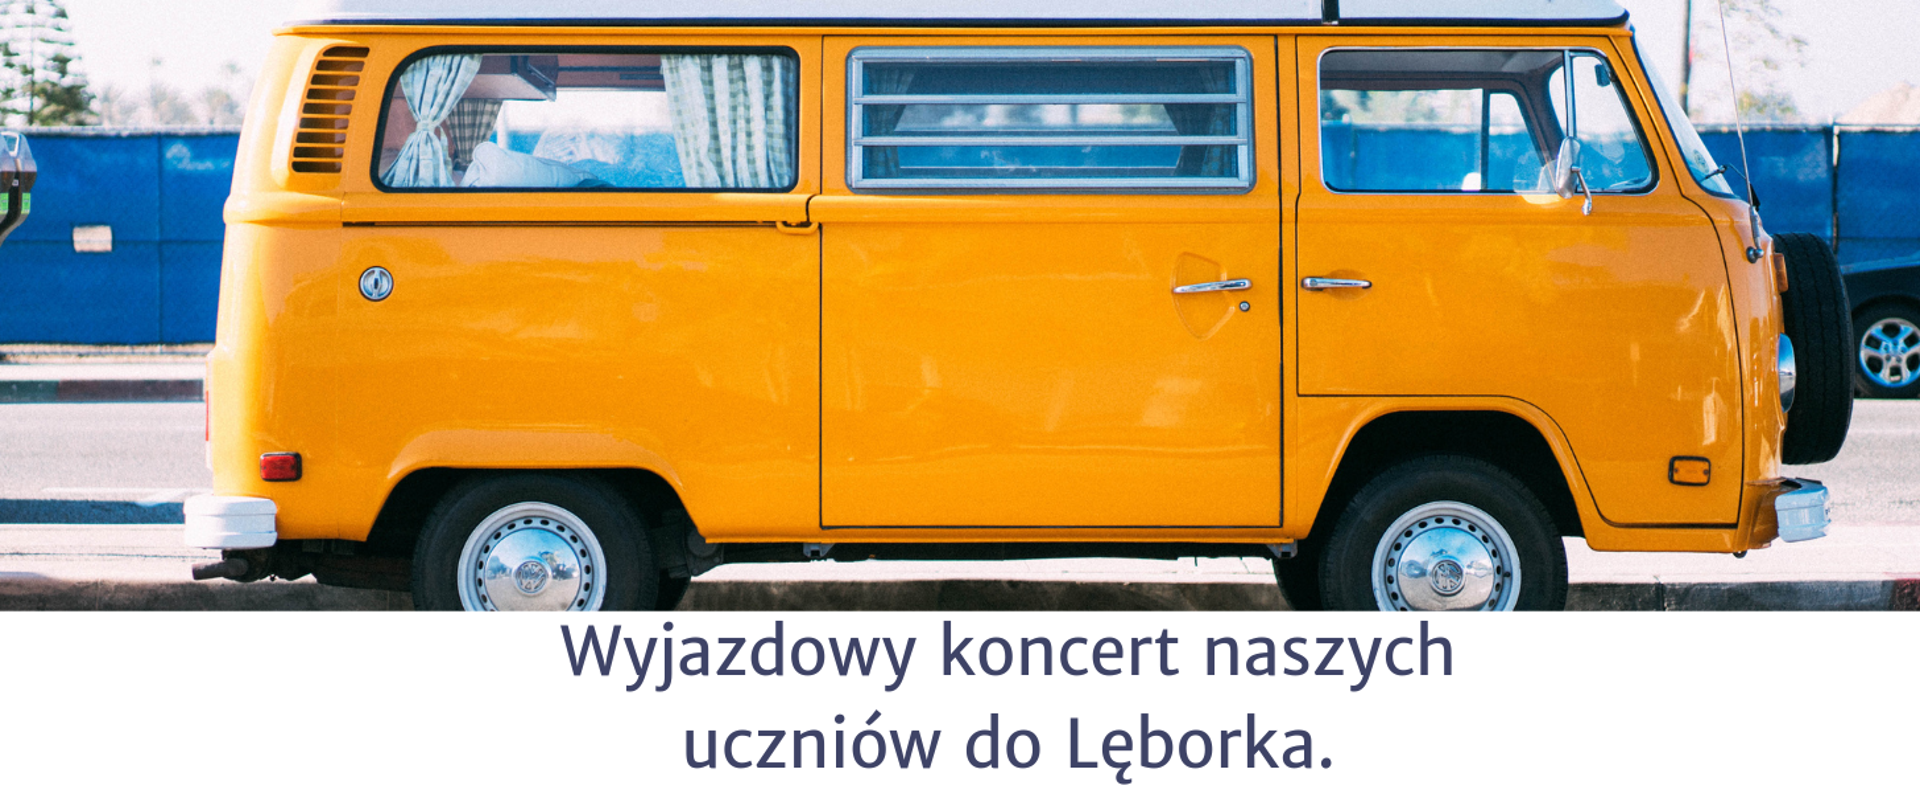 Zdjęcie przedstawia na pierwszym planie żółty samochód oraz informację o wyjeździe uczniów naszej szkoły do Lęborka na koncert.